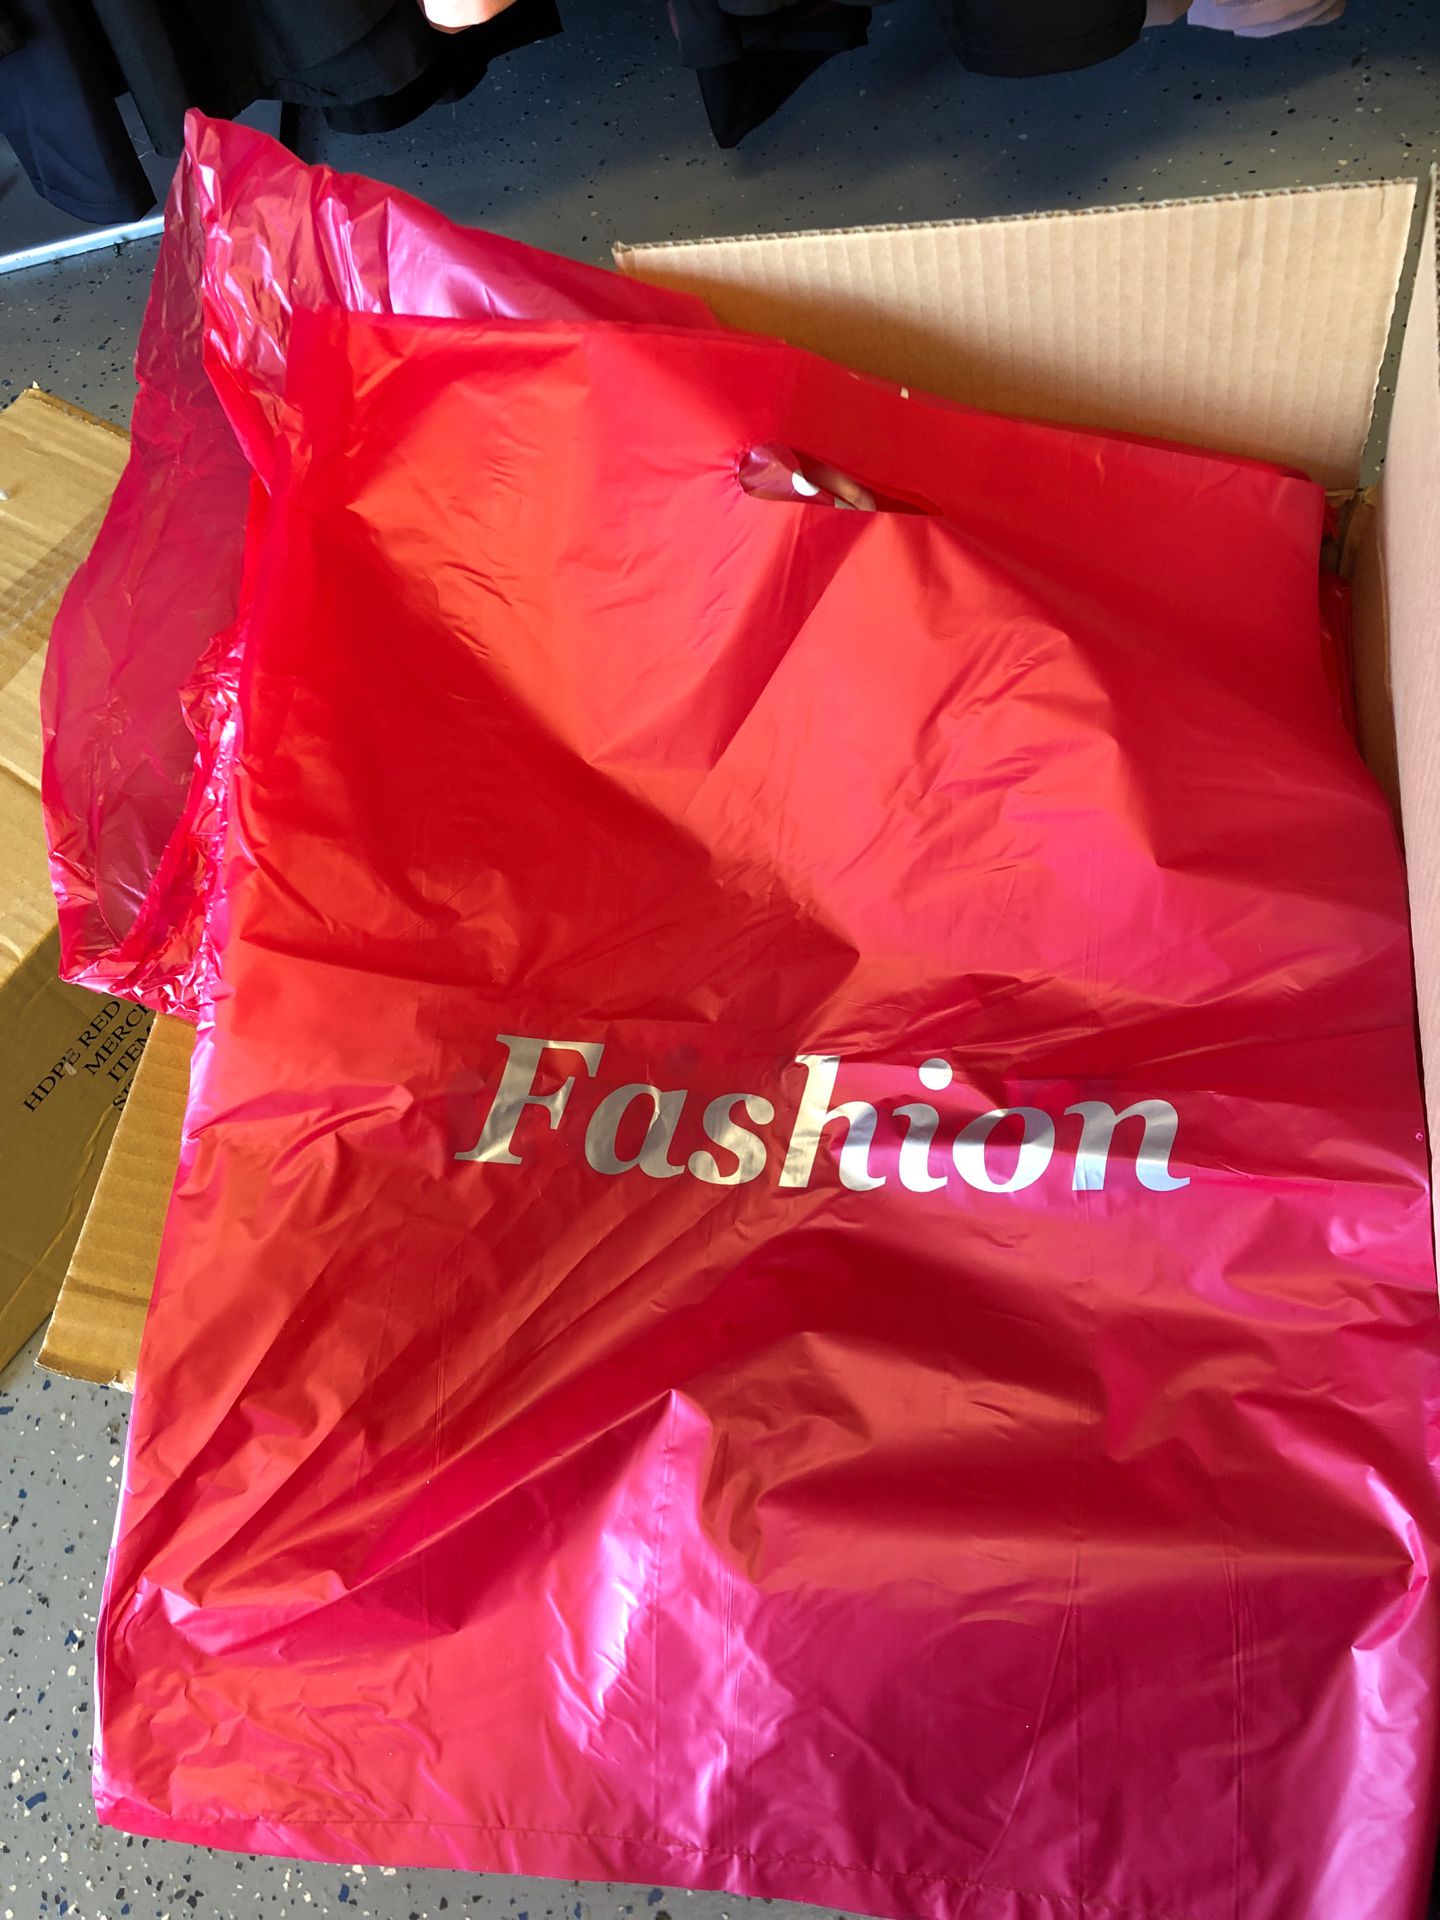 Box of 1000 plastic shopping retail bags